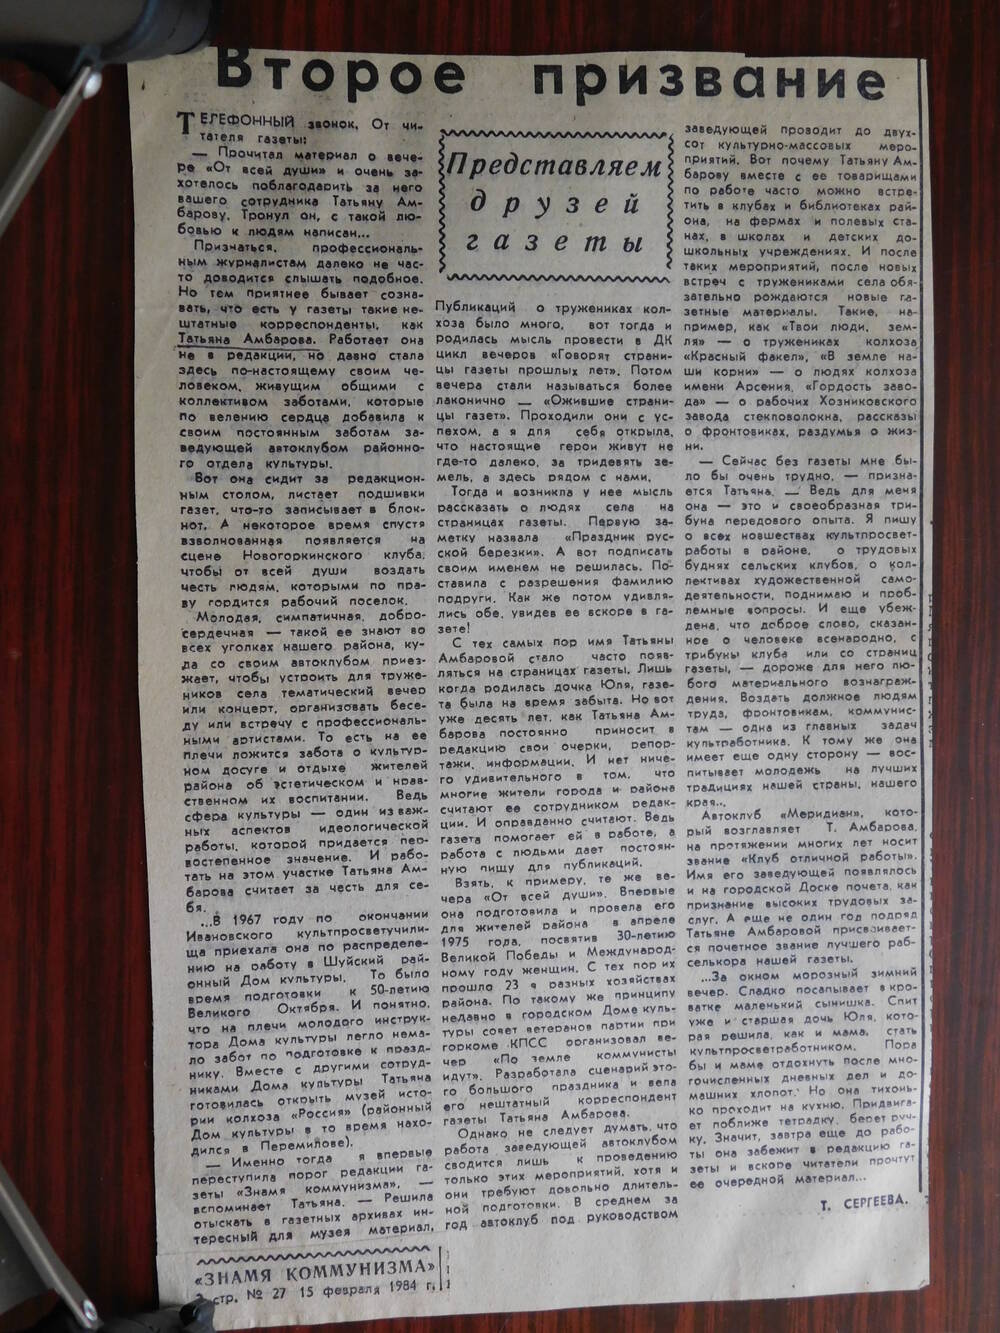 Фрагмент газеты Знамя коммунизма № 27 от 15.02.1984 г. Ст. Т. Сергеева. Второе призвание. Шуя.